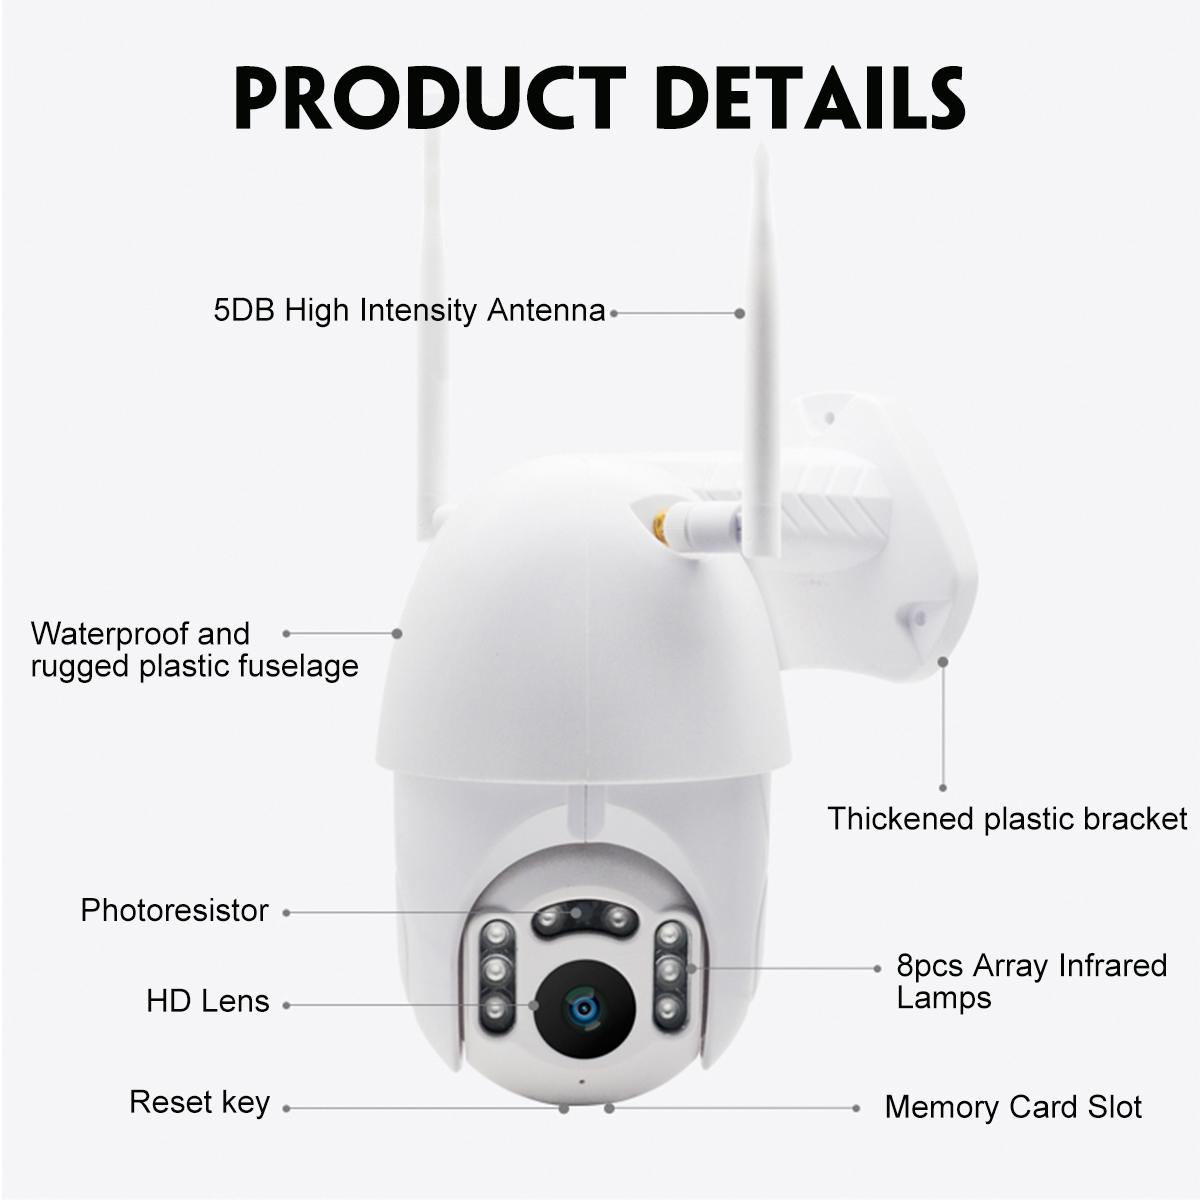 GUUDGO-8-LED-1080P-Waterproof-Wireless-Camera-Outdoor-IP-Camera-Wireless-Camera-WiFi-PanTilt-Night-V-1546641